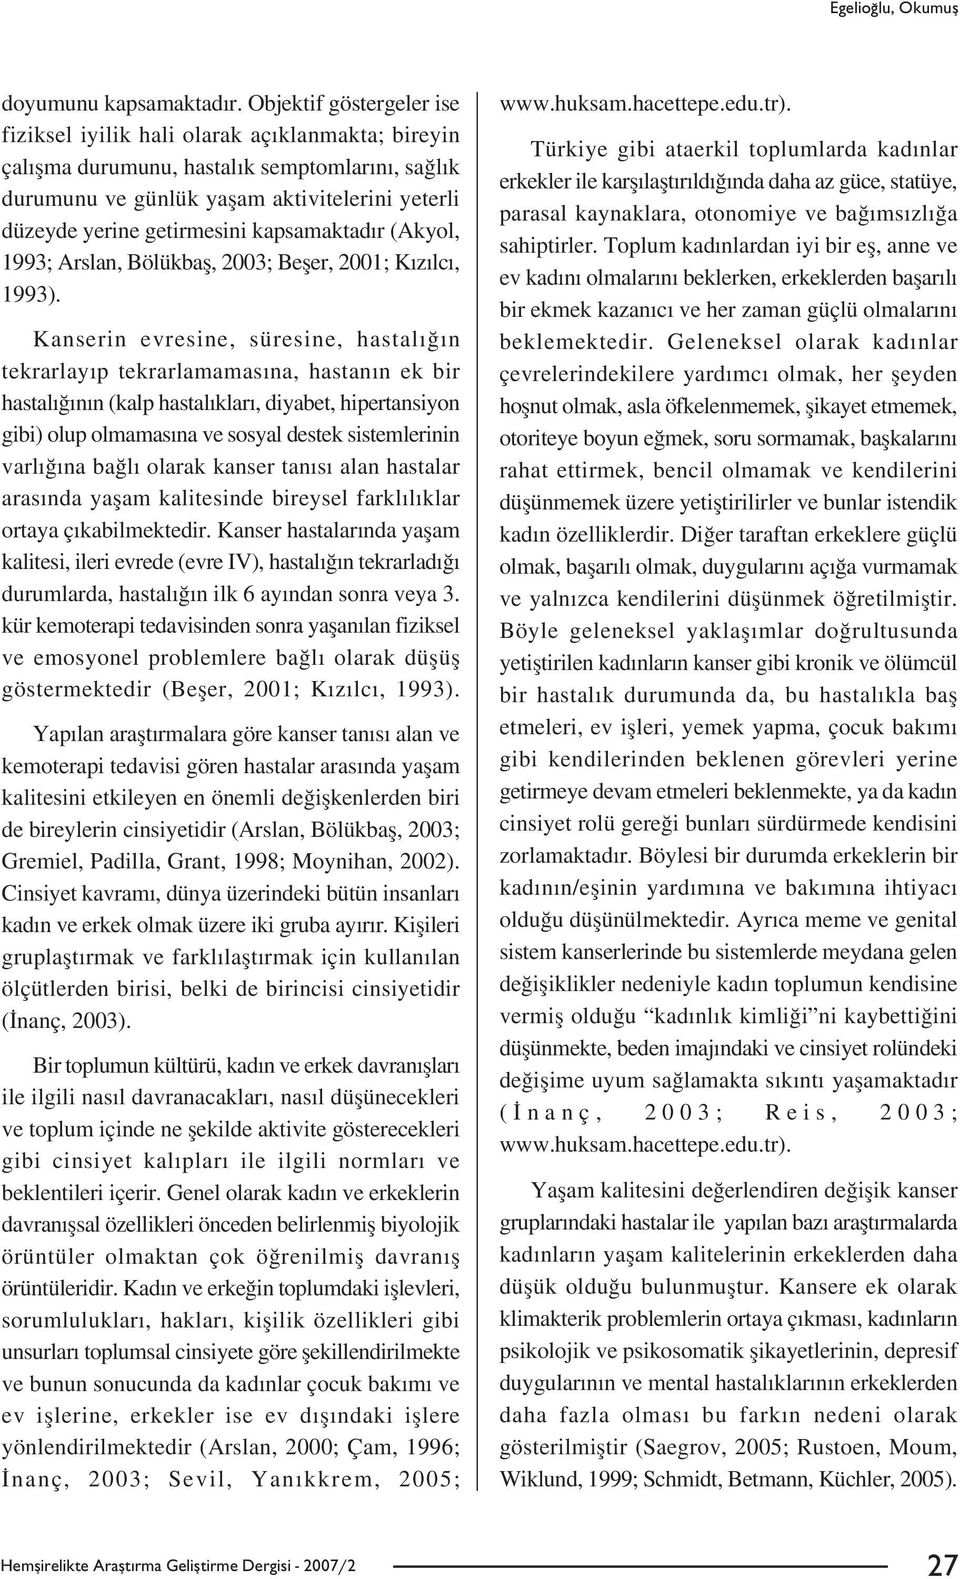 kapsamaktad r (Akyol, 1993; Arslan, Bölükbafl, 2003; Befler, 2001; K z lc, 1993).